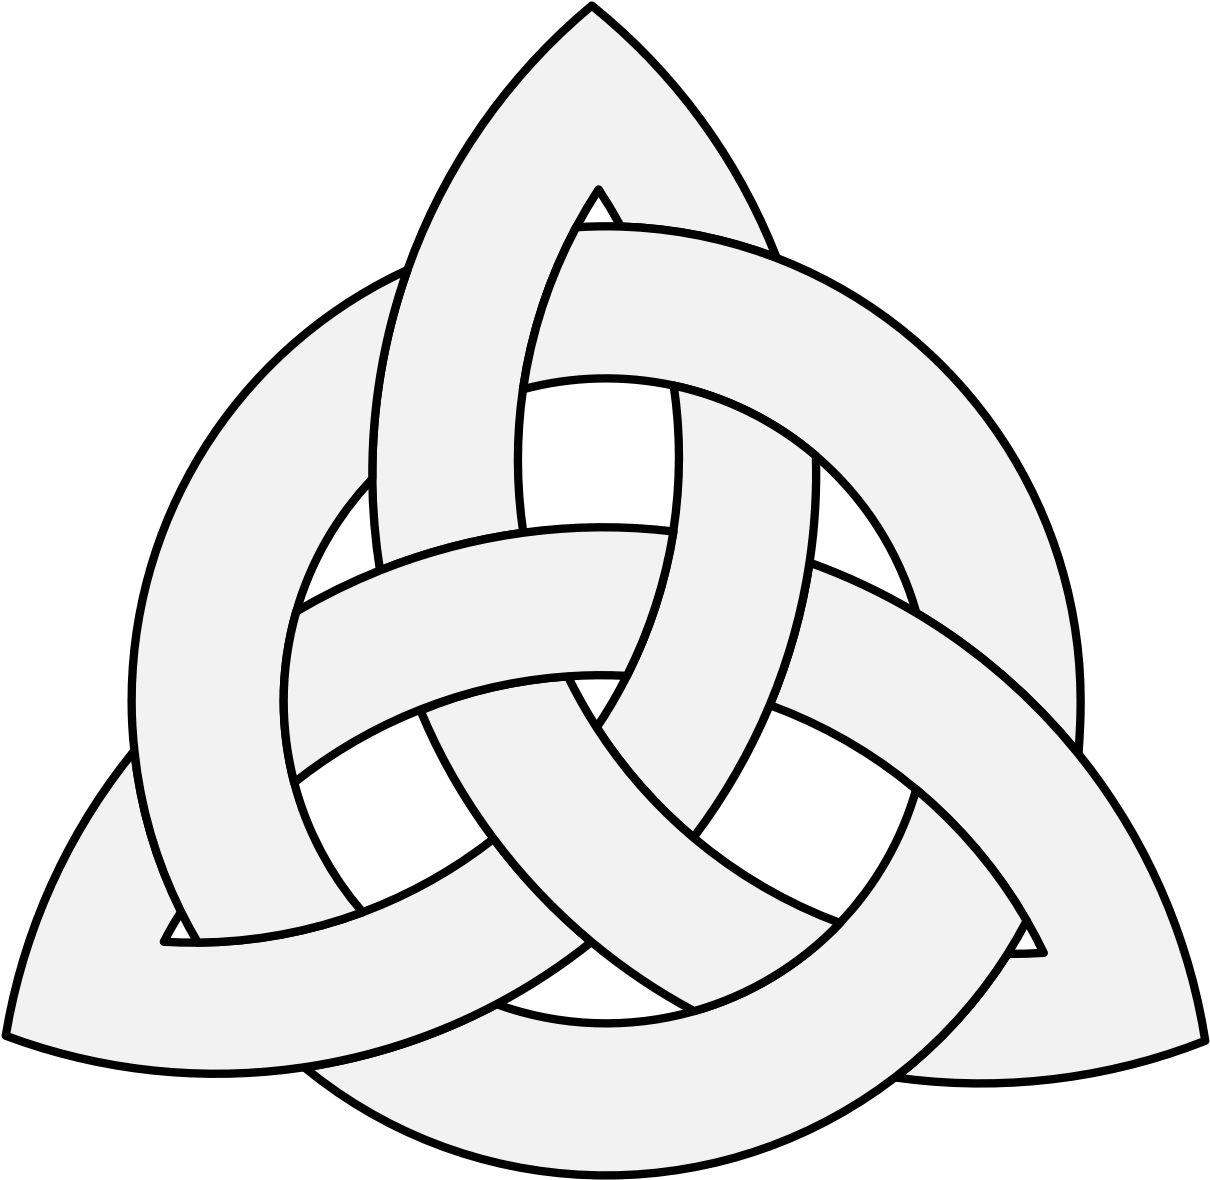 Pdf - Celtic Knot (1237x1209)